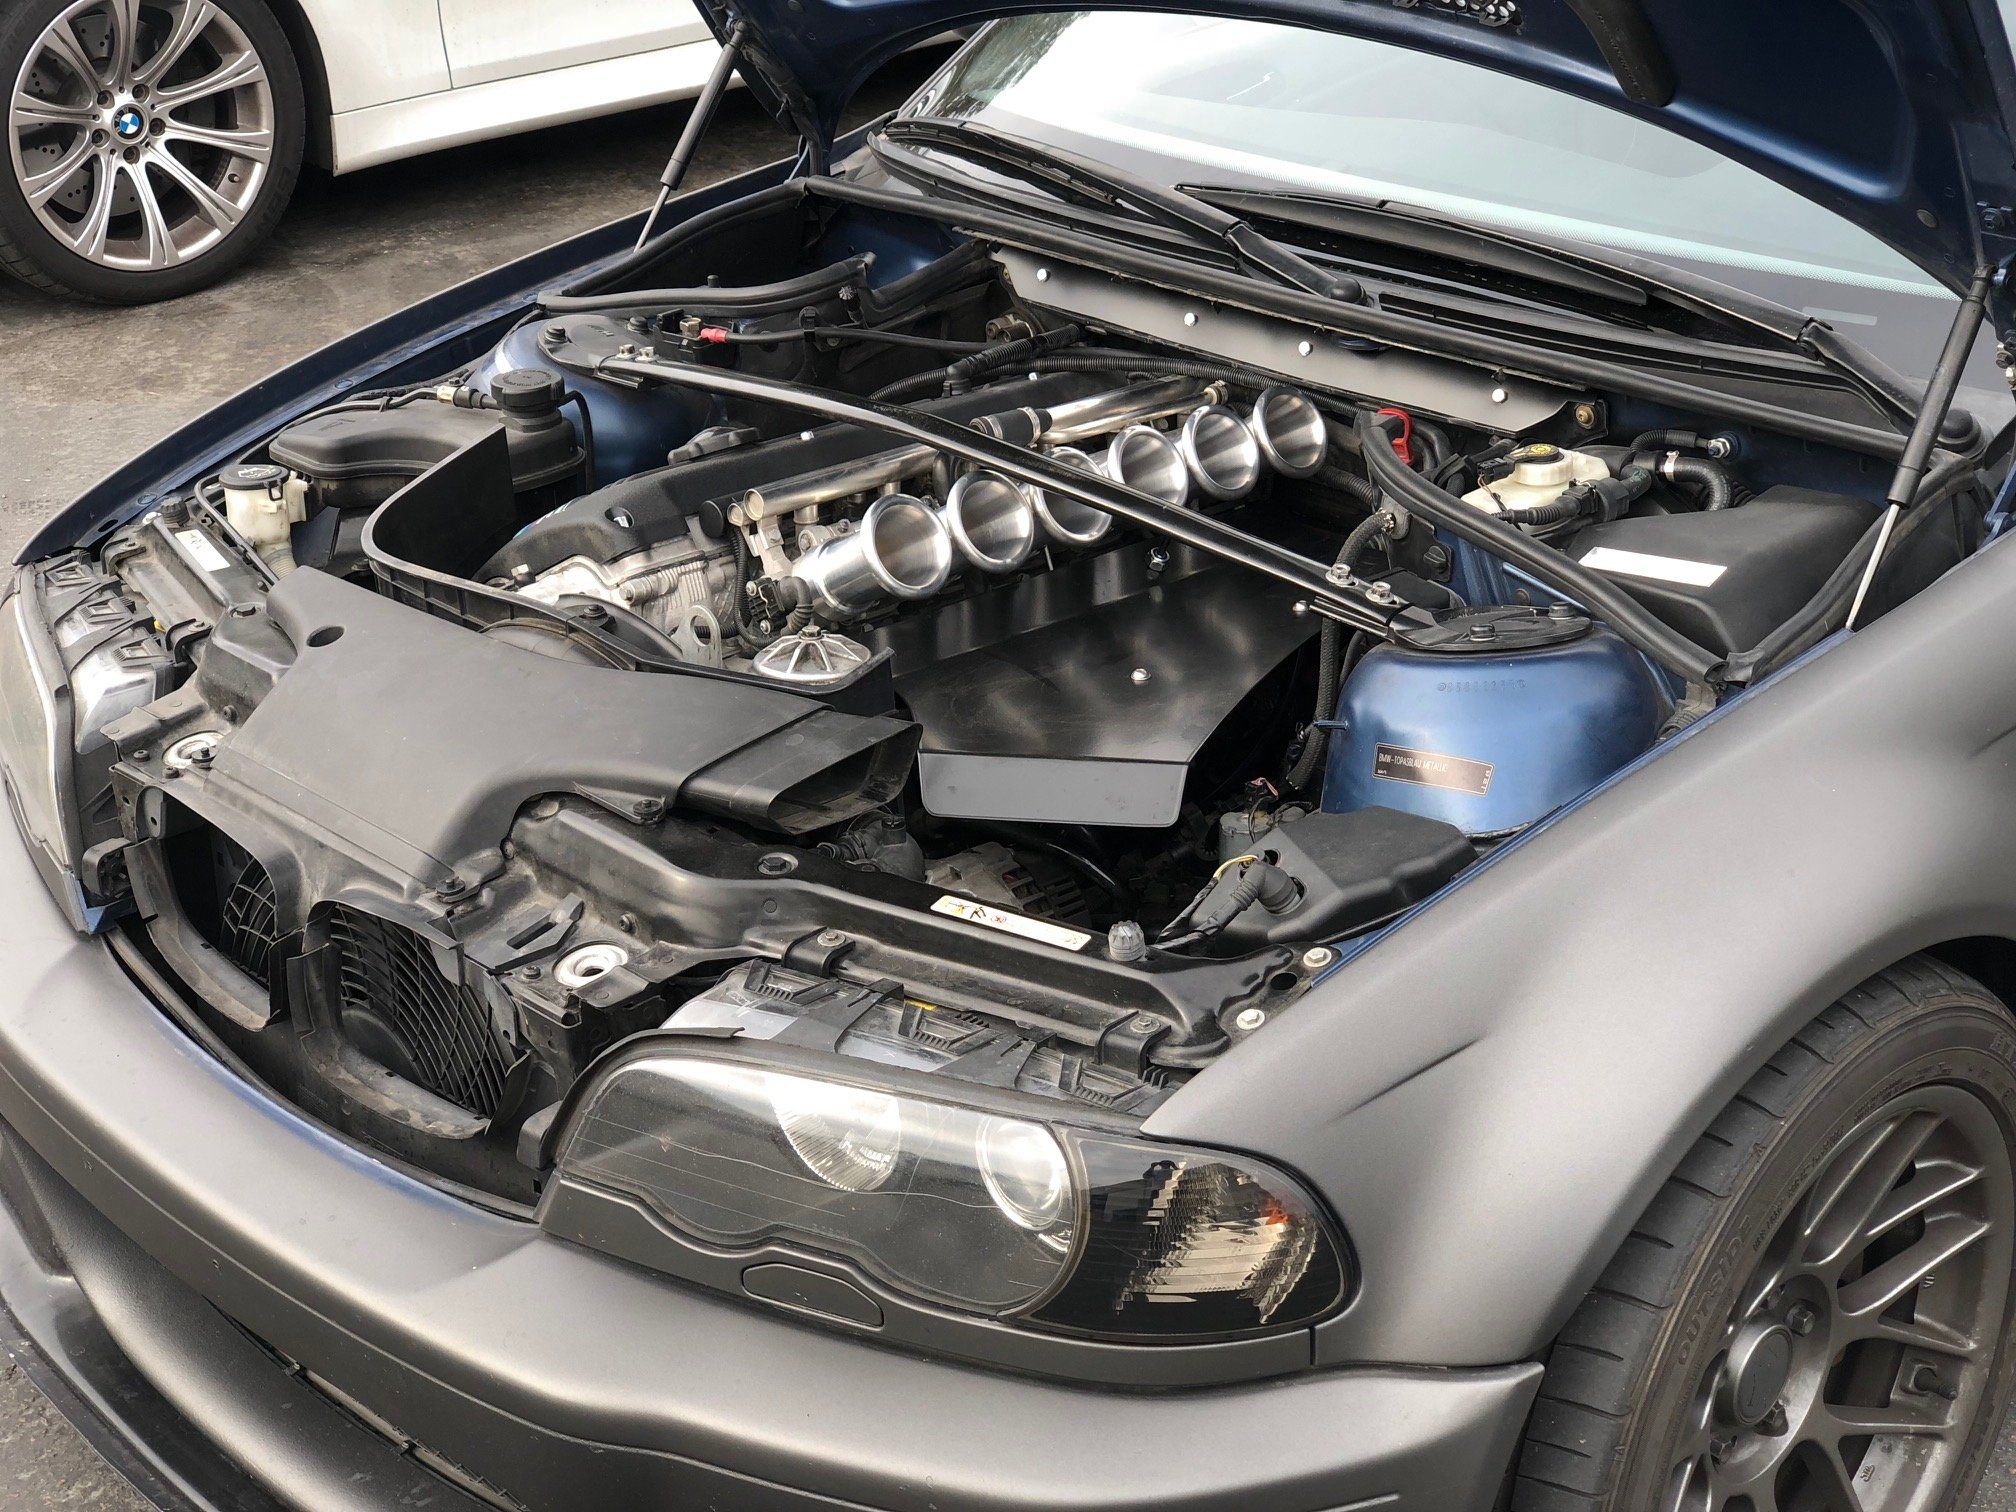 BMW S54 engine